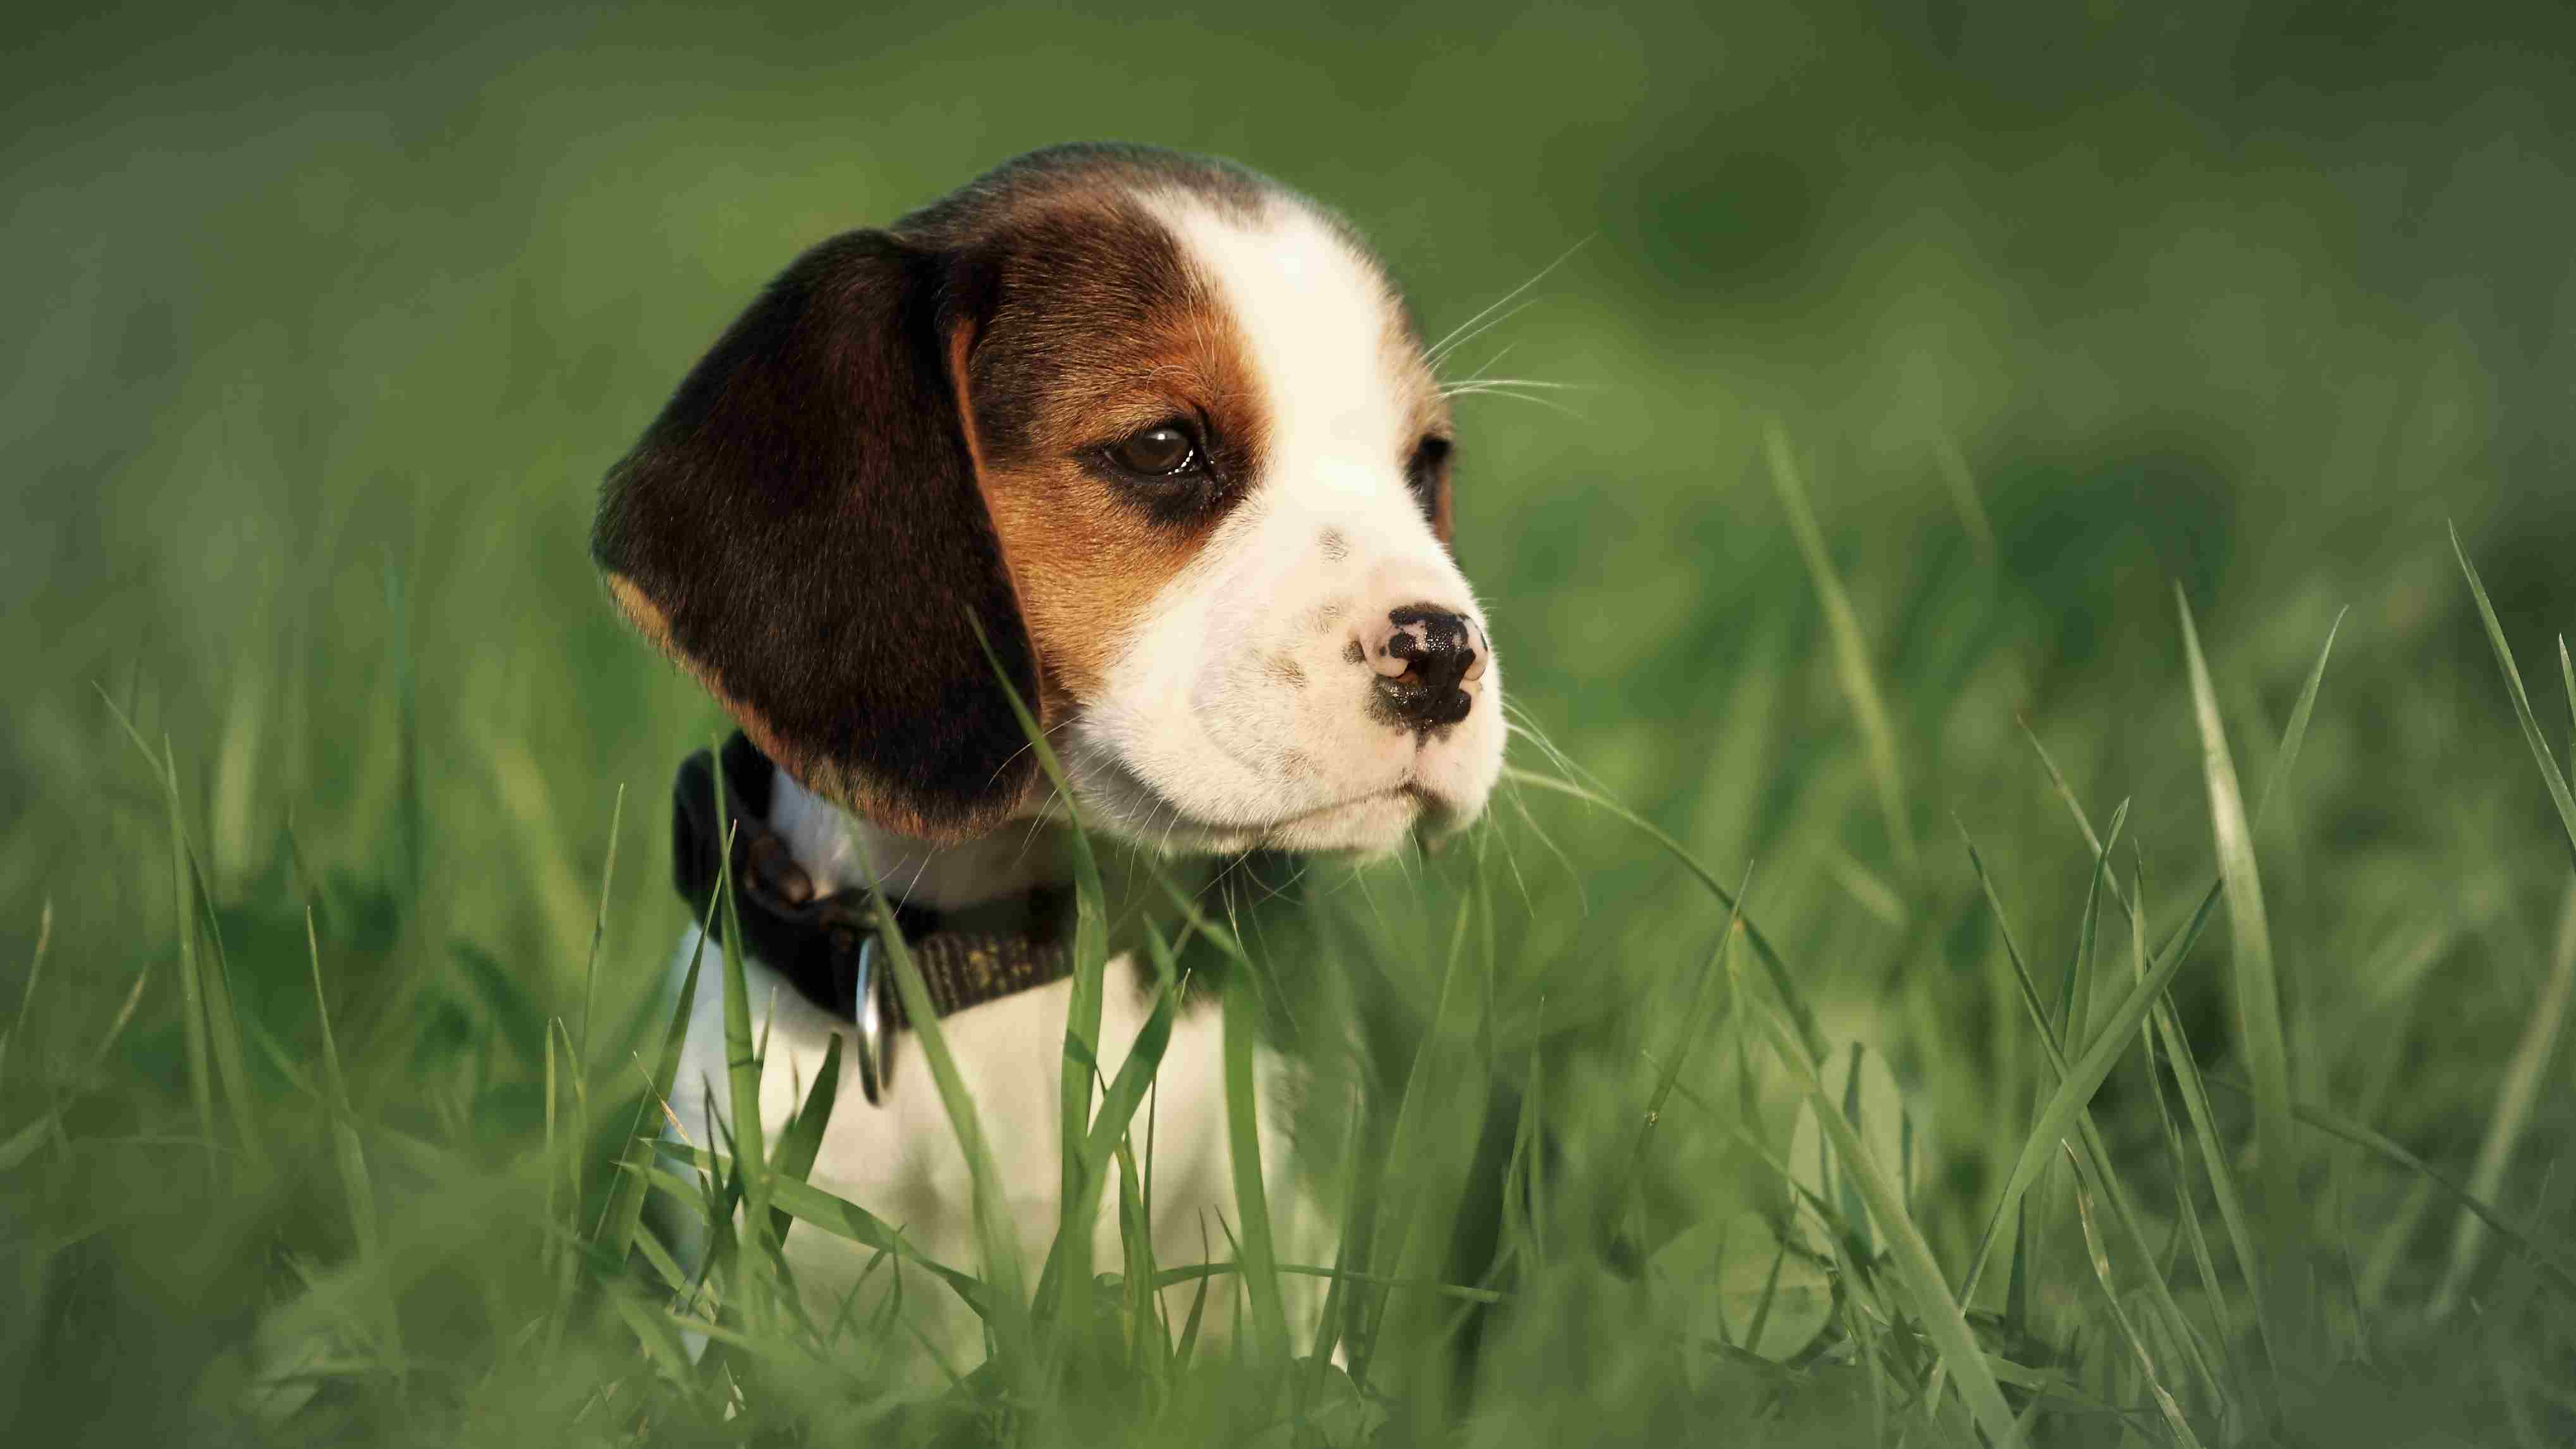 Beagle puppy sitting in grass